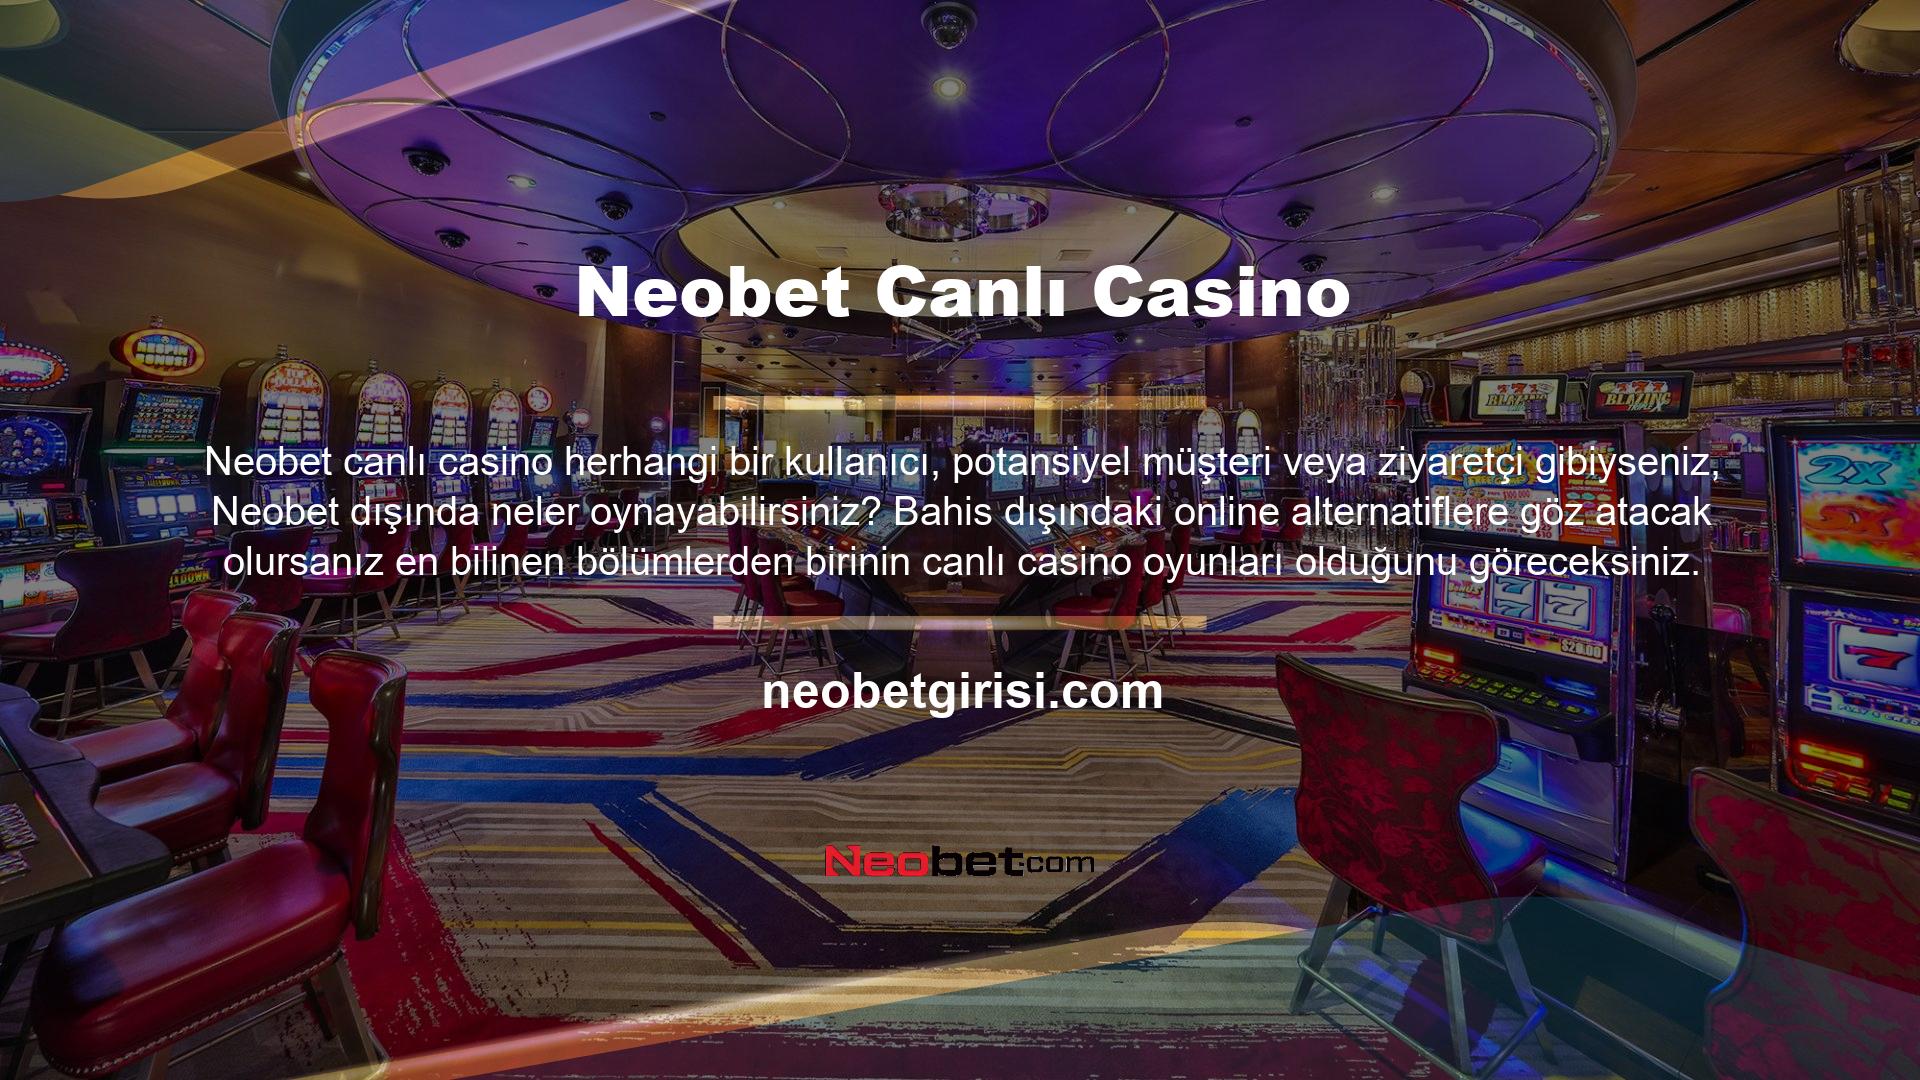 Neobet Canlı Casino OyunlarıBu bölümde Neobet canlı casino oyunlarını aratırsanız 5 farklı oyun sağlayıcıdan bilinen ve bilinmeyen her türlü oyunu bulacaksınız